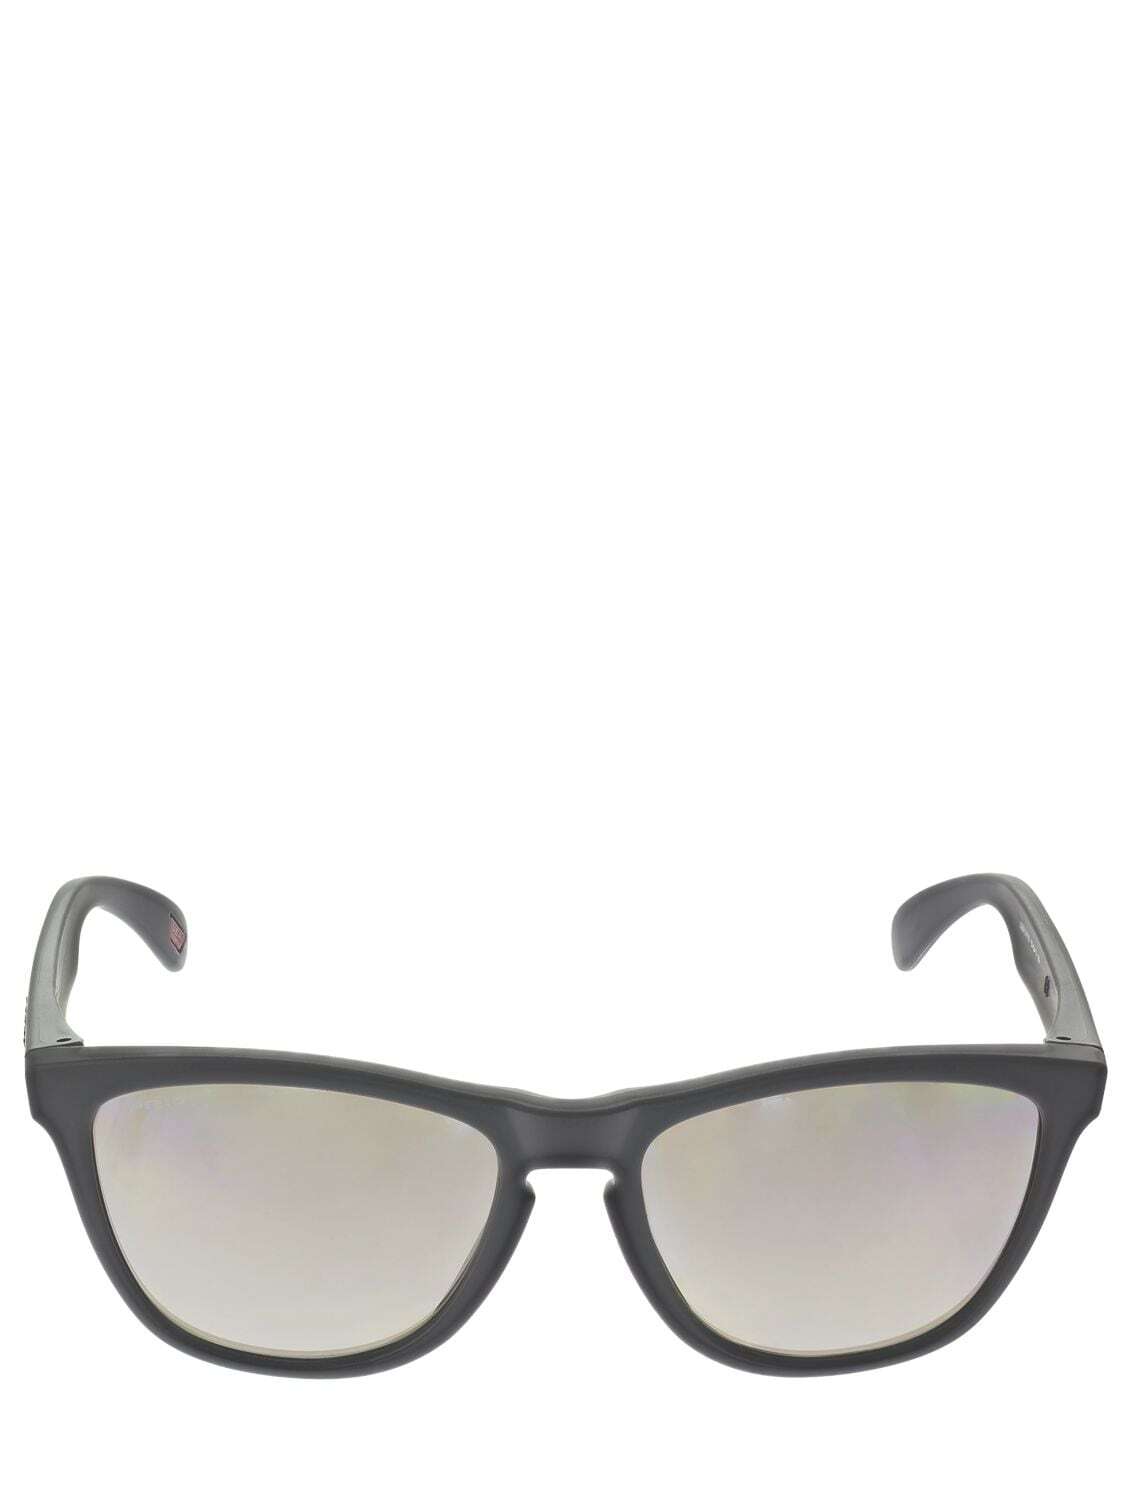 OAKLEY Frogskins Prizm Polarized Sunglasses in black